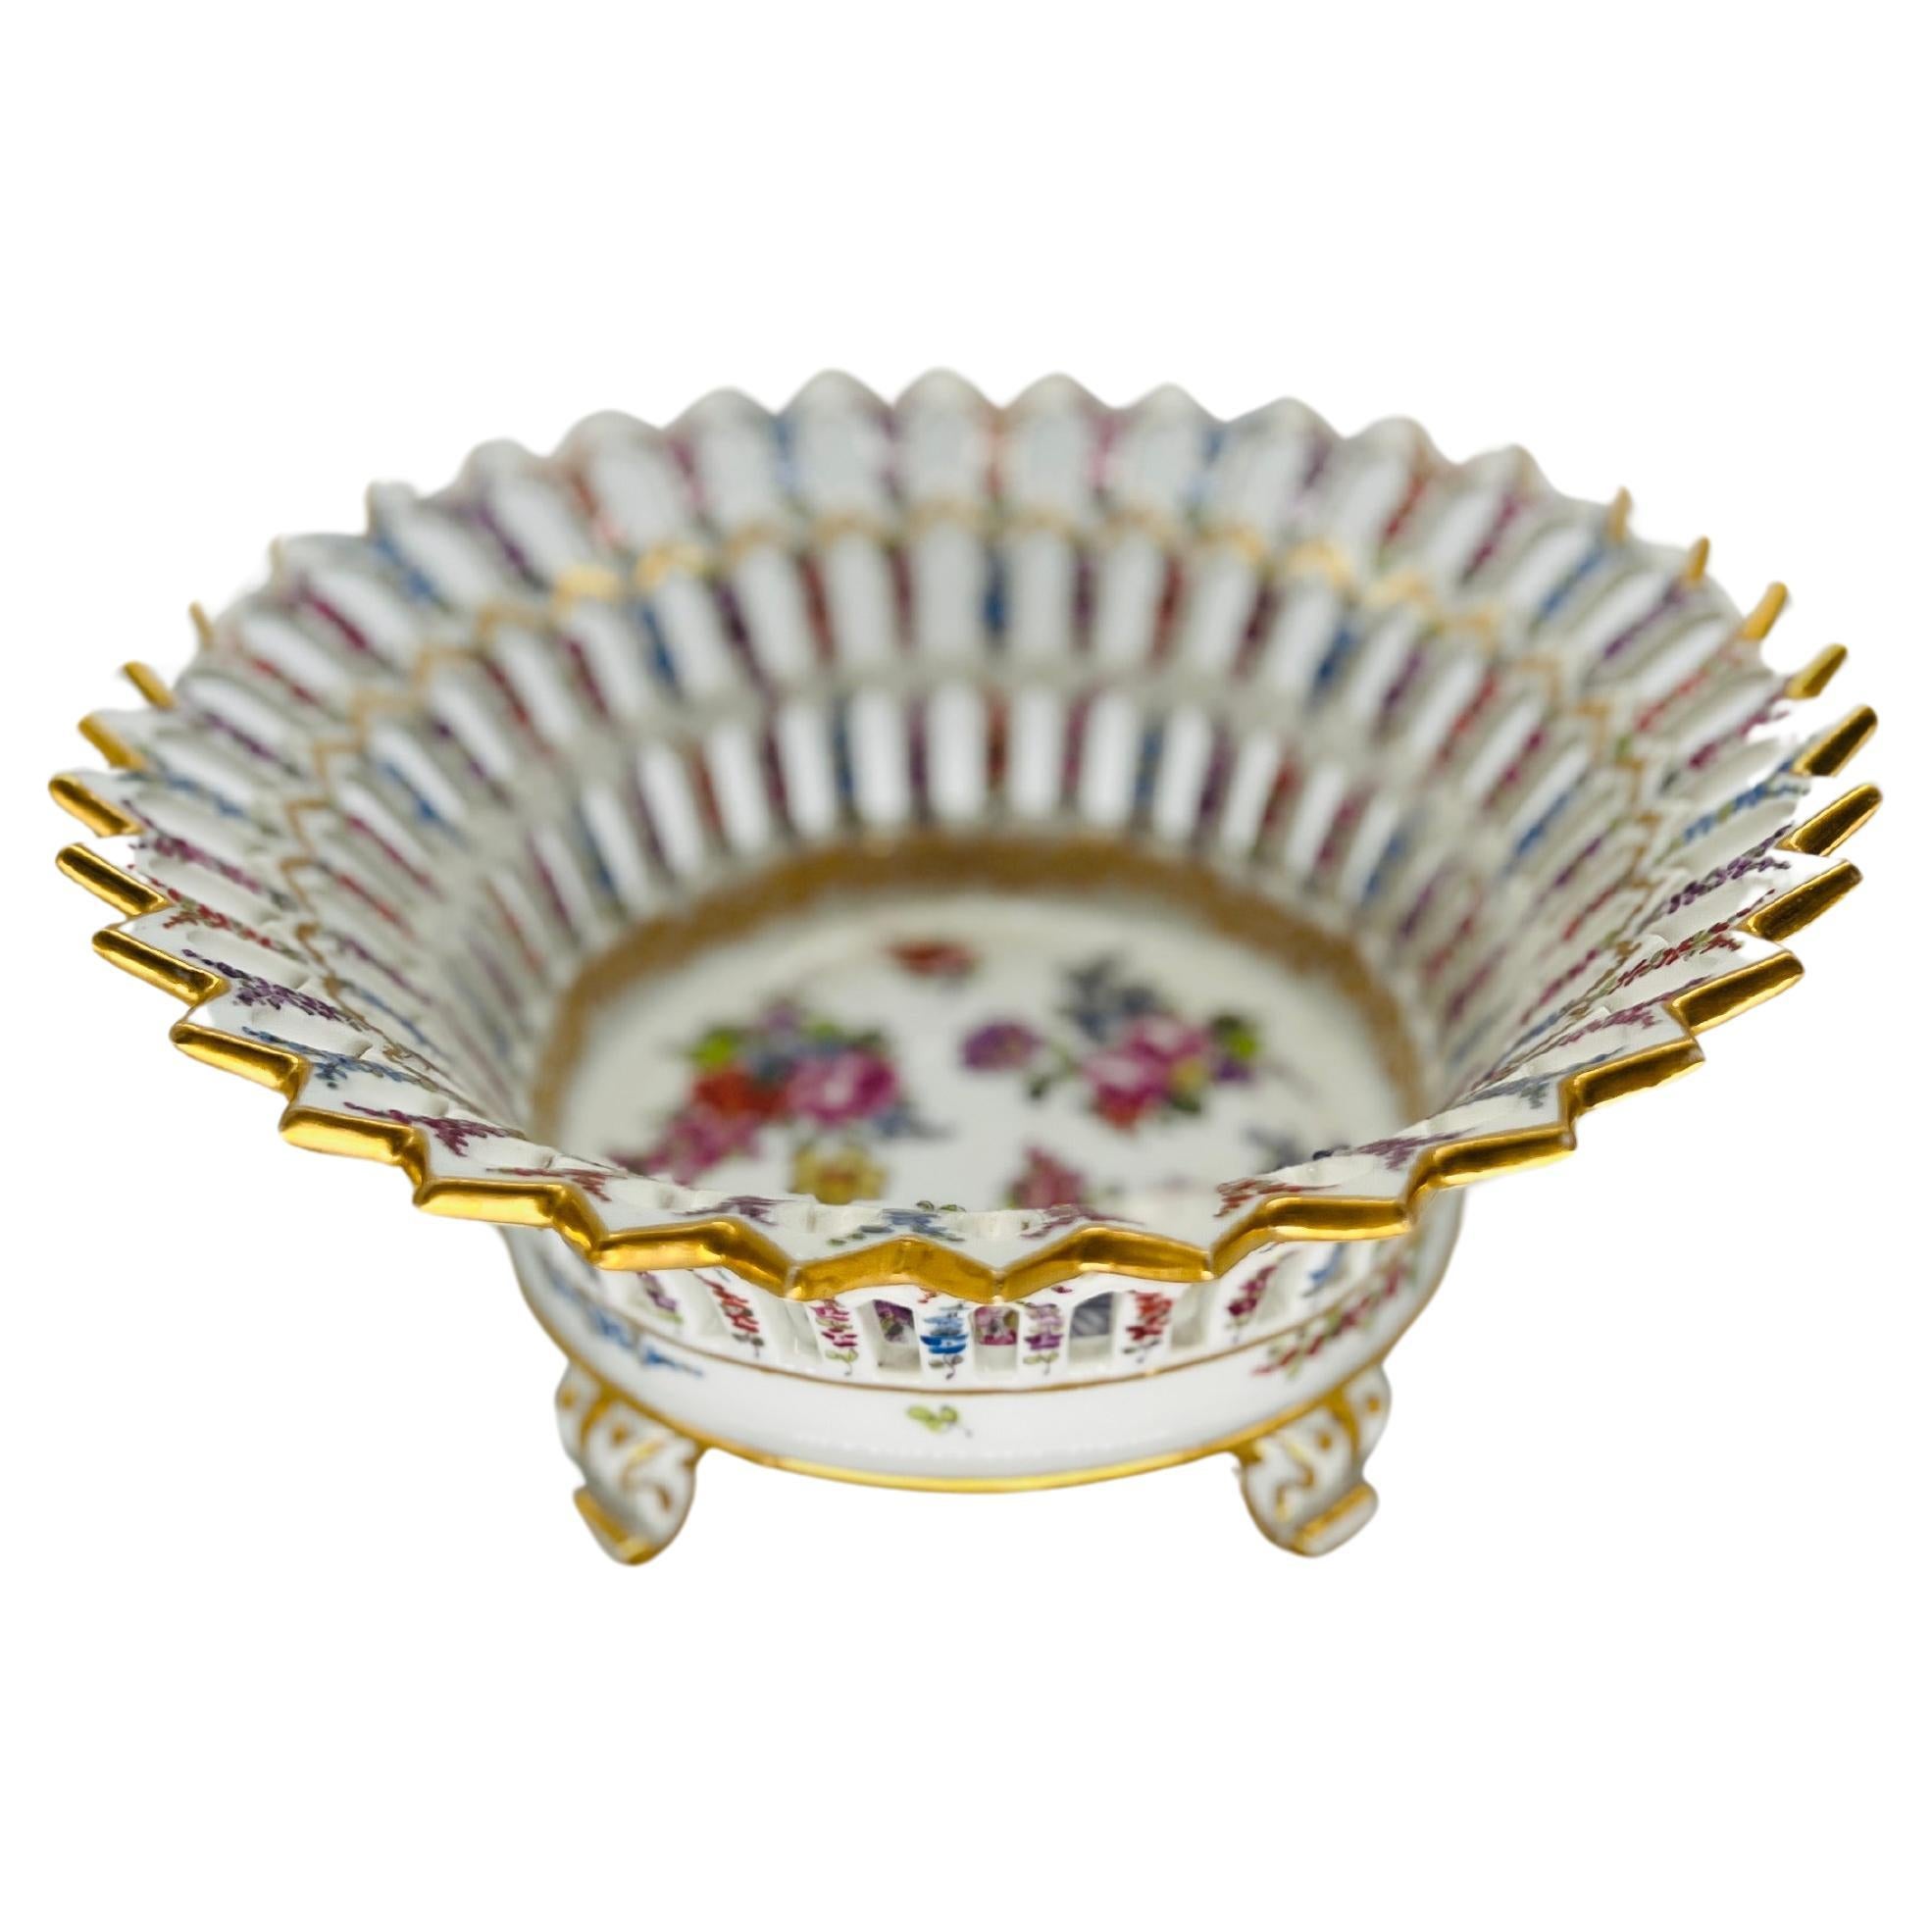 Dieser exquisite antike Obstkorb aus Meissener Porzellan mit Blumendekor aus der Zeit um 1920 verkörpert die zeitlose Eleganz und Handwerkskunst, für die die berühmte Meissener Porzellanmanufaktur bekannt ist. Das kunstvoll aus feinem Porzellan